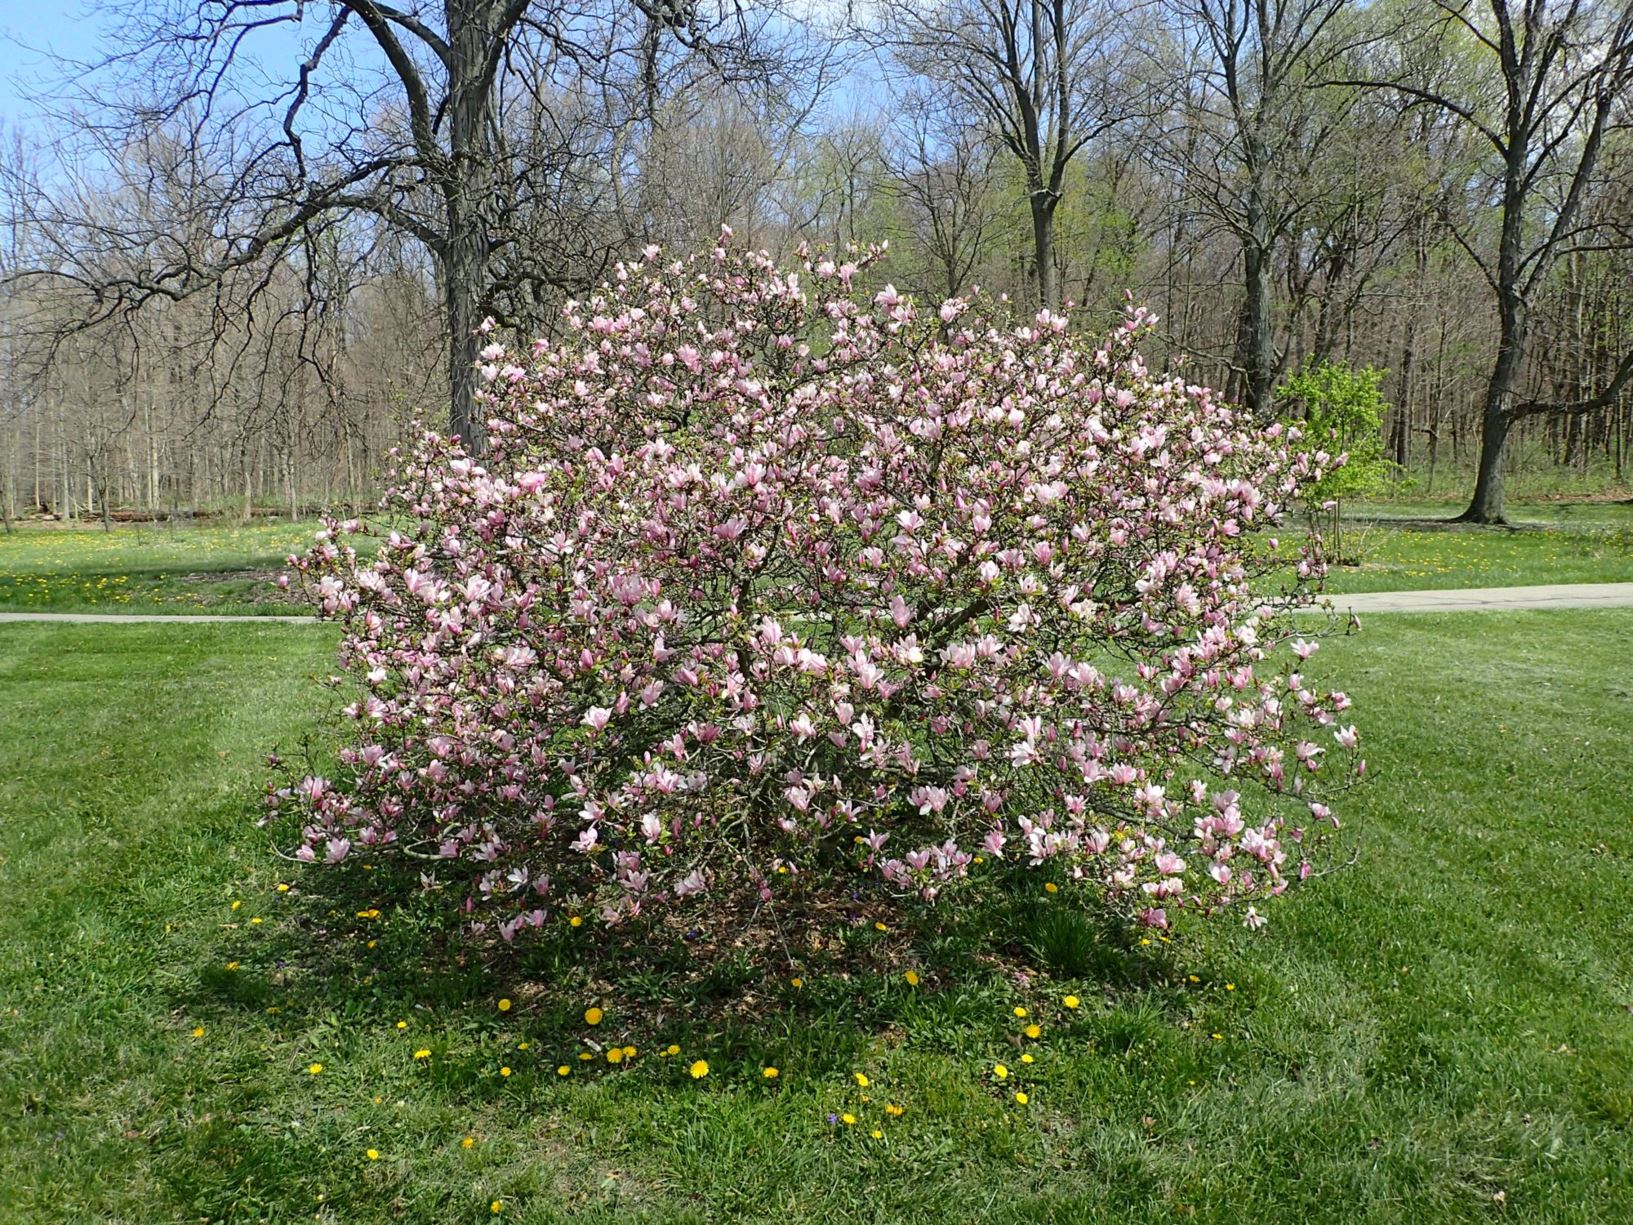 Magnolia 'George Henry Kern' - George Henry Kern magnolia